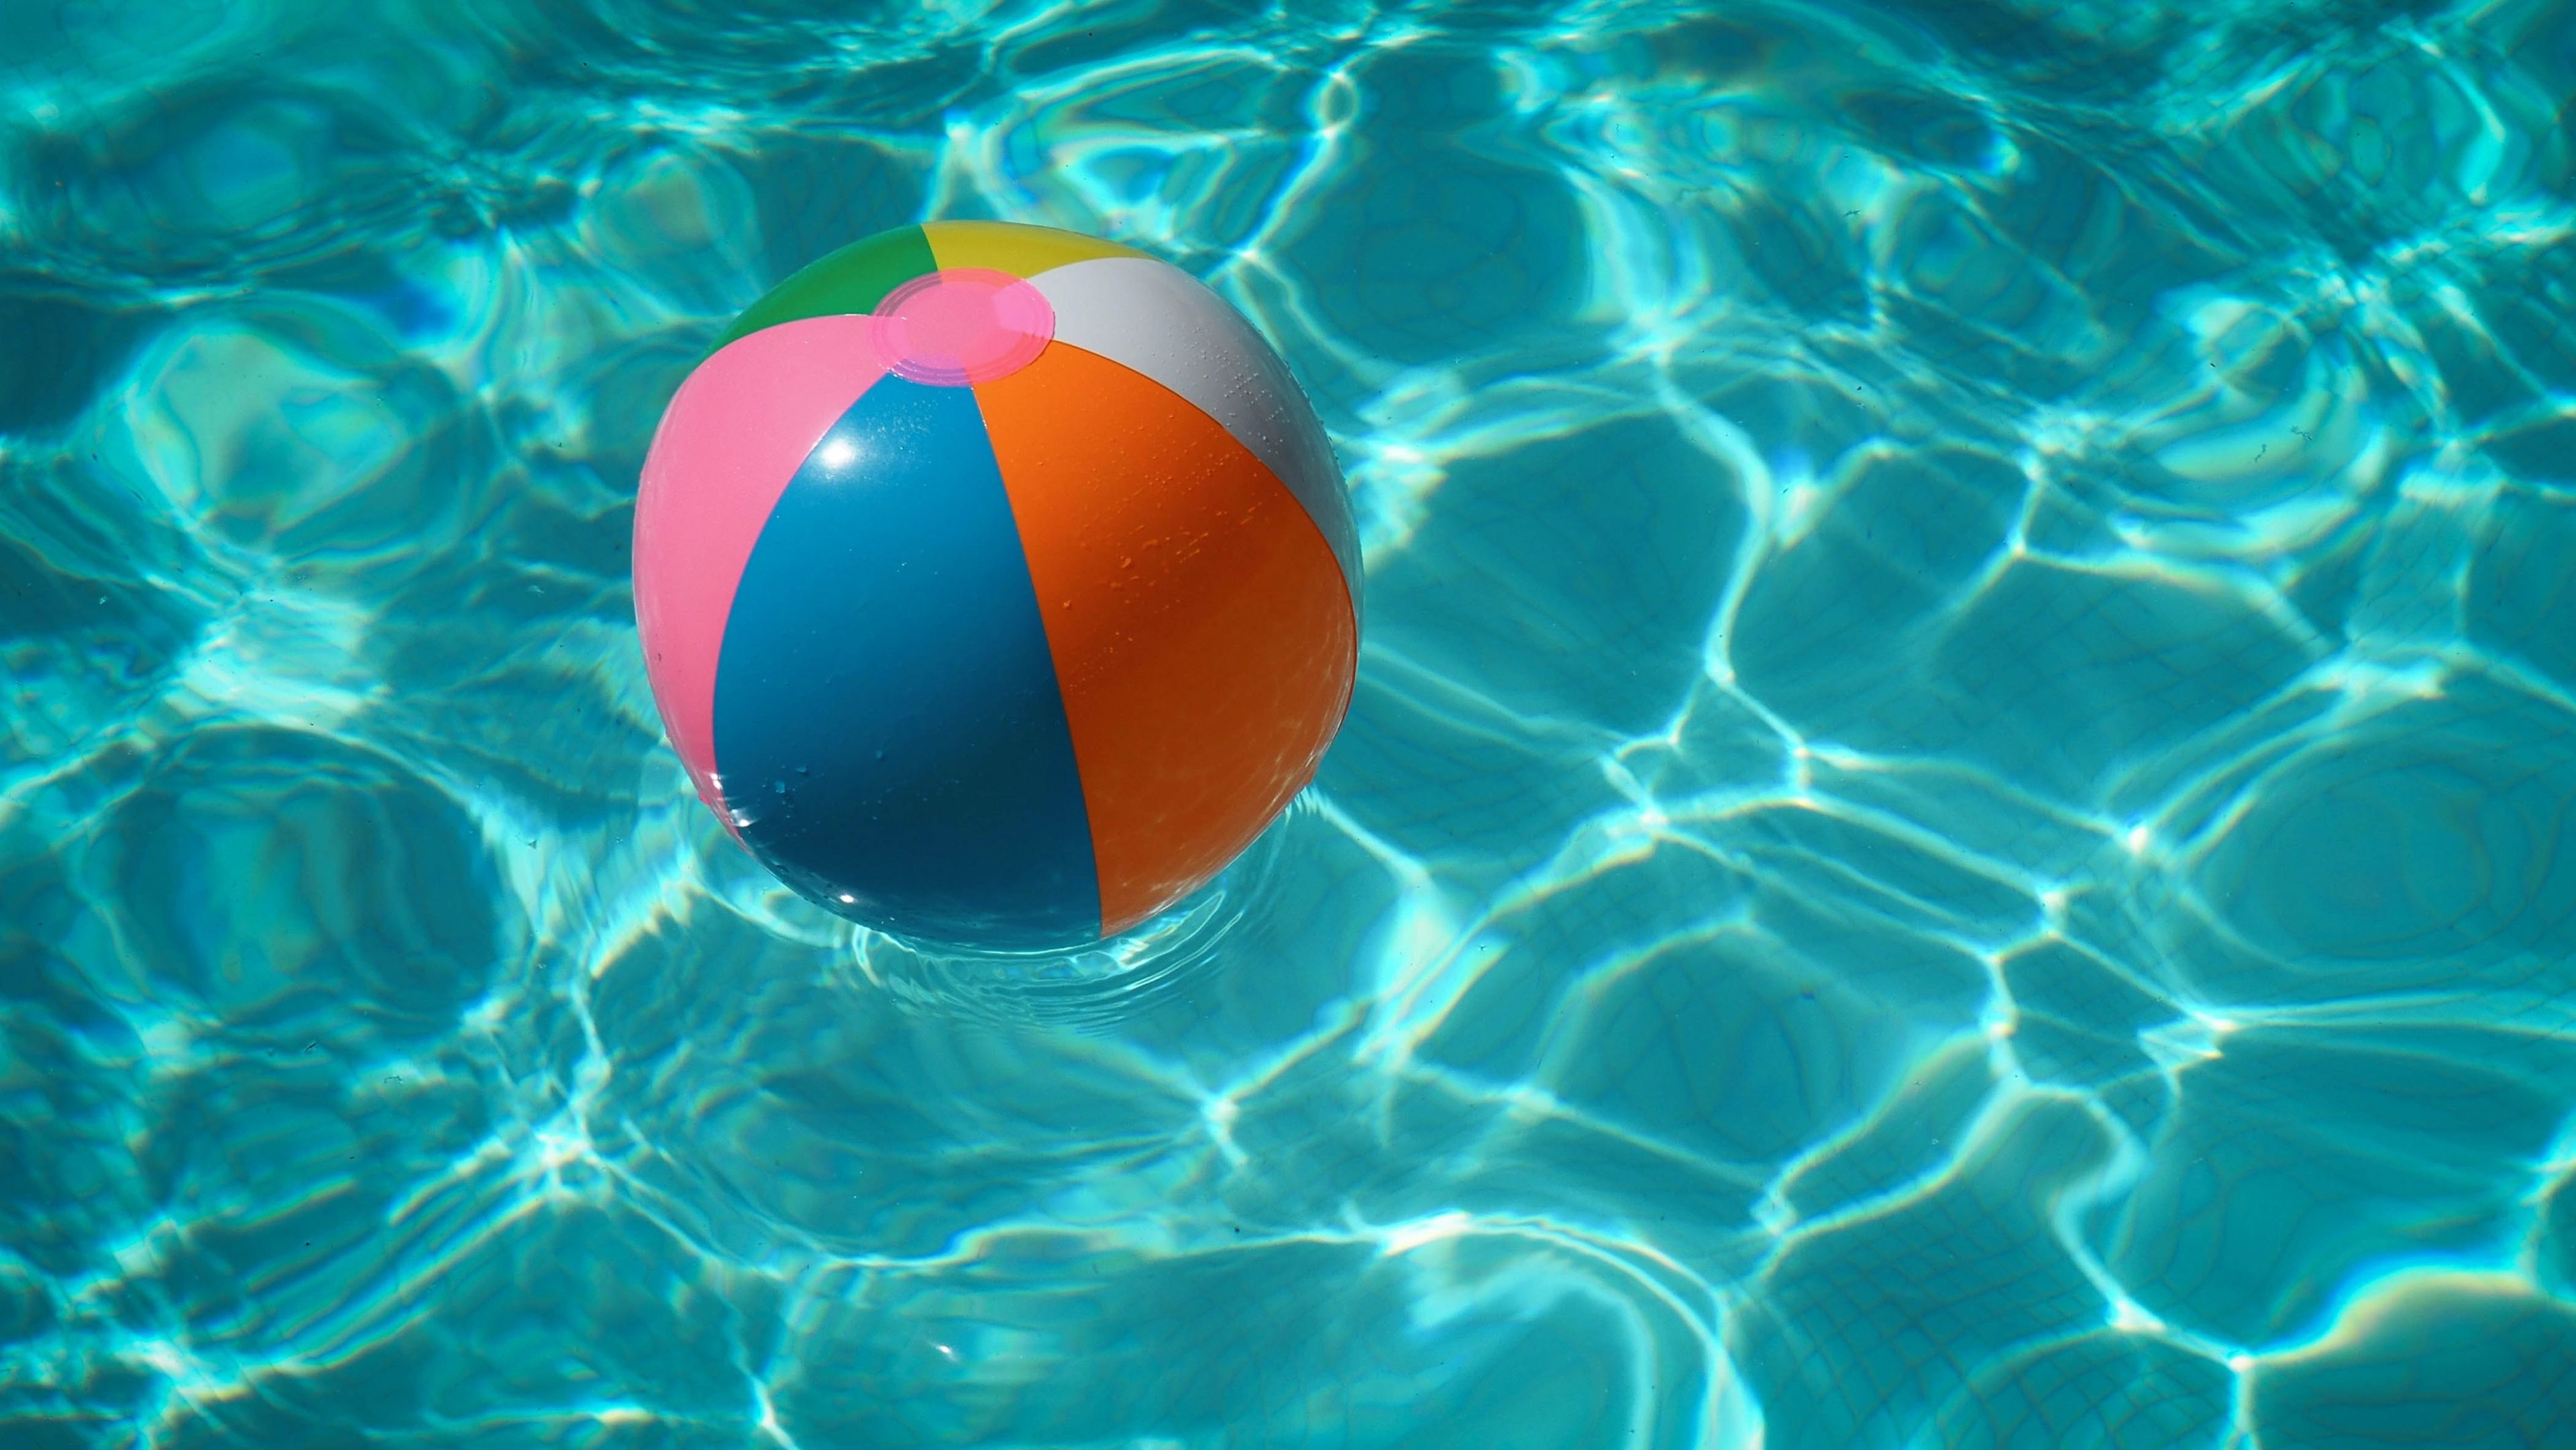 Pelota de playa en una piscina, estampa de verano